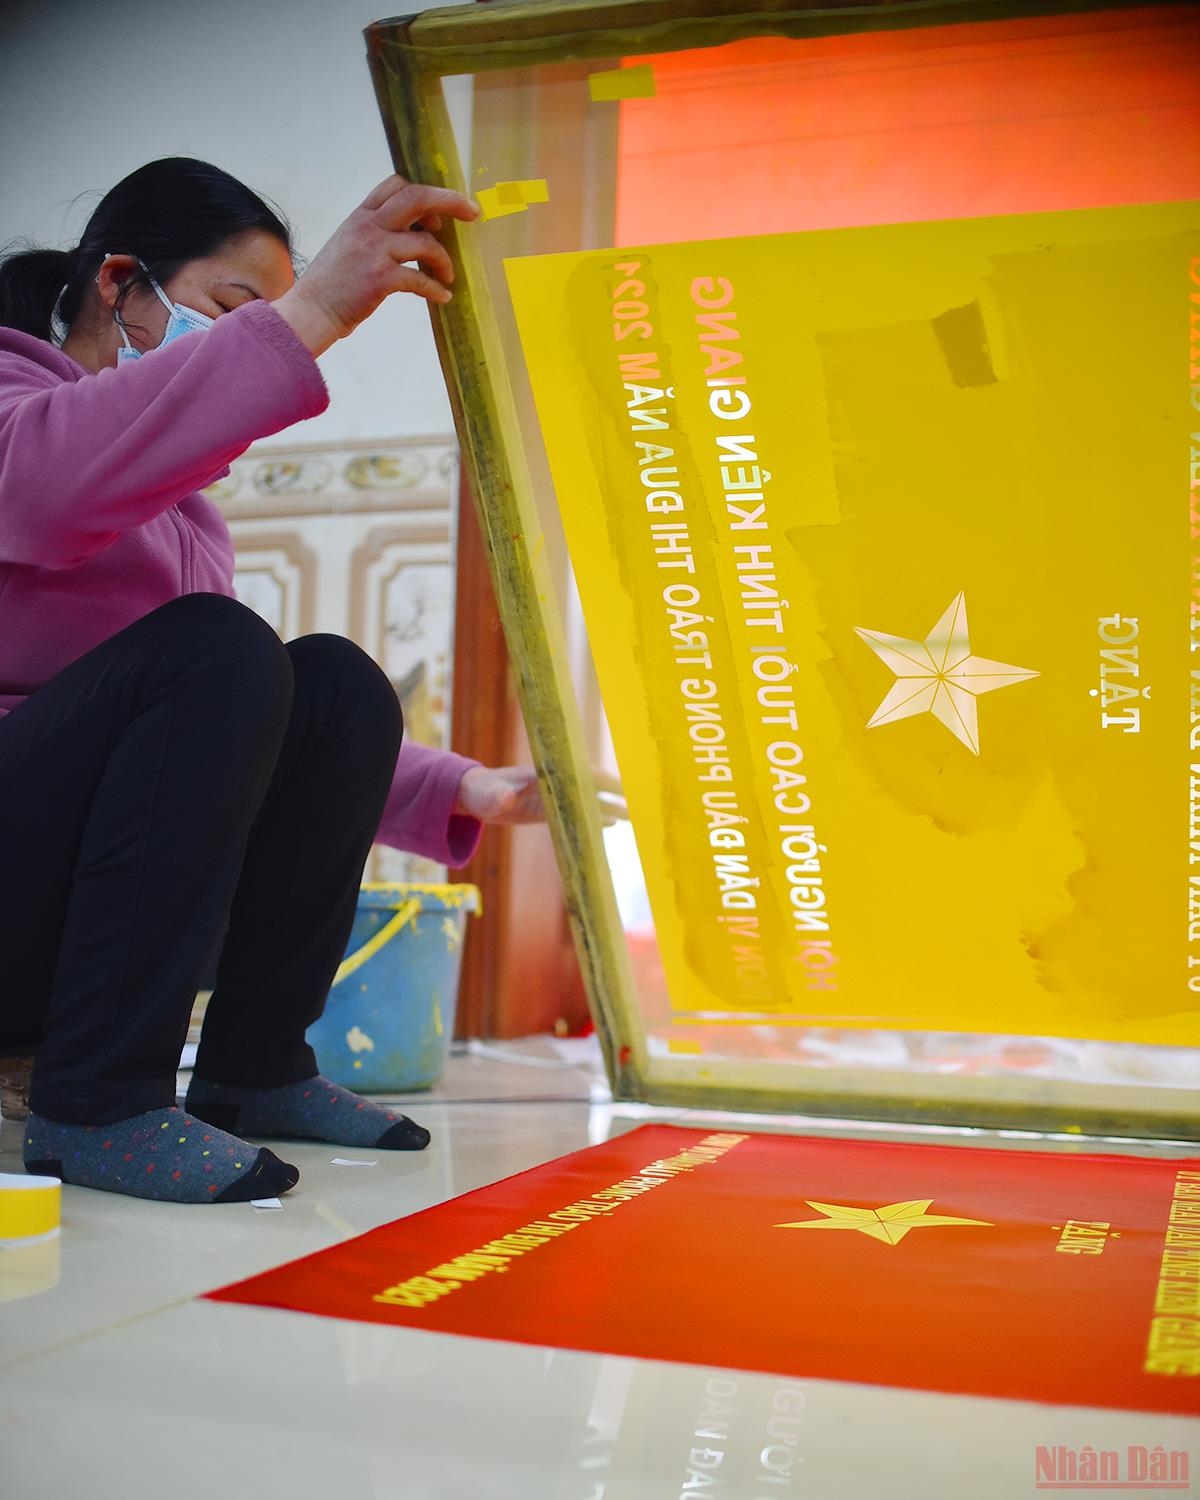 Hãy chiêm ngưỡng những bức ảnh cờ đỏ sao vàng hiện hữu tuyệt đẹp tại một ngôi làng nhỏ. Đây là cảm xúc hài lòng và tự hào của mỗi người dân Việt Nam với biểu tượng quốc gia, tượng trưng cho lòng yêu nước và sự bền vững của đất nước.